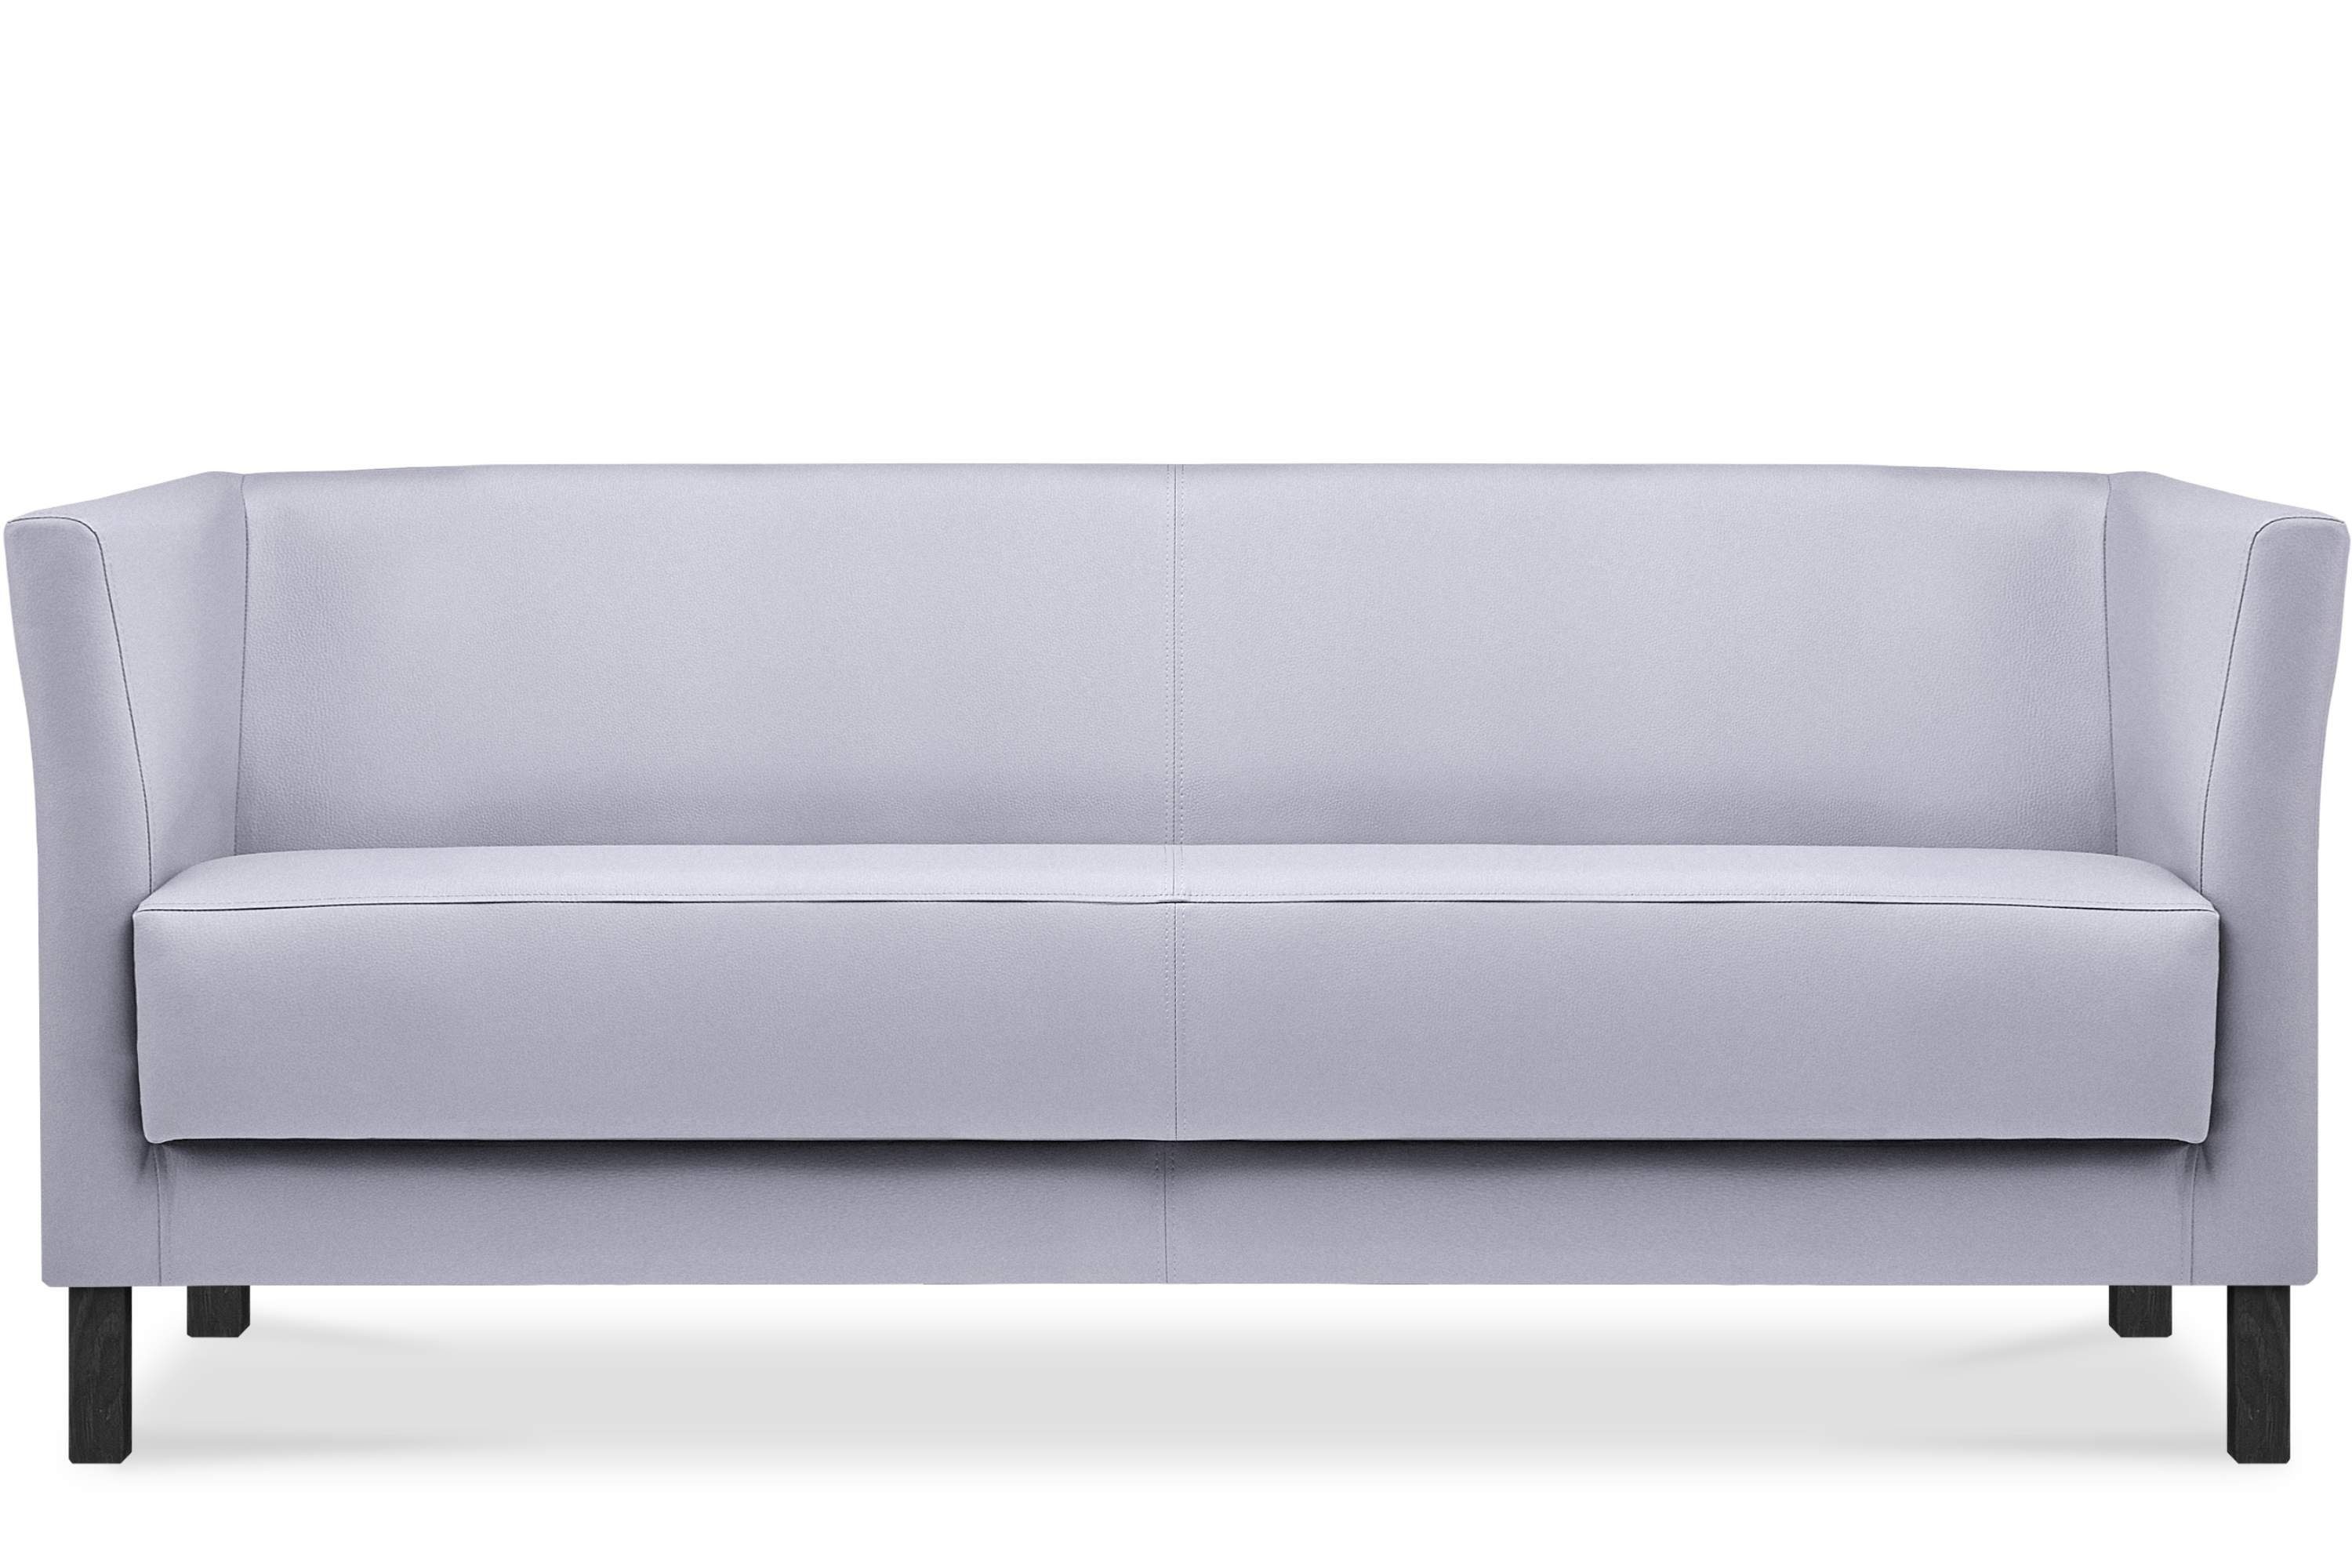 Konsimo Sofa ESPECTO Sofa 3 Sitzer, 1 Teile, weiche Sitzfläche und hohe Rückenlehne, hohe Beine, Kunstleder grau | grau